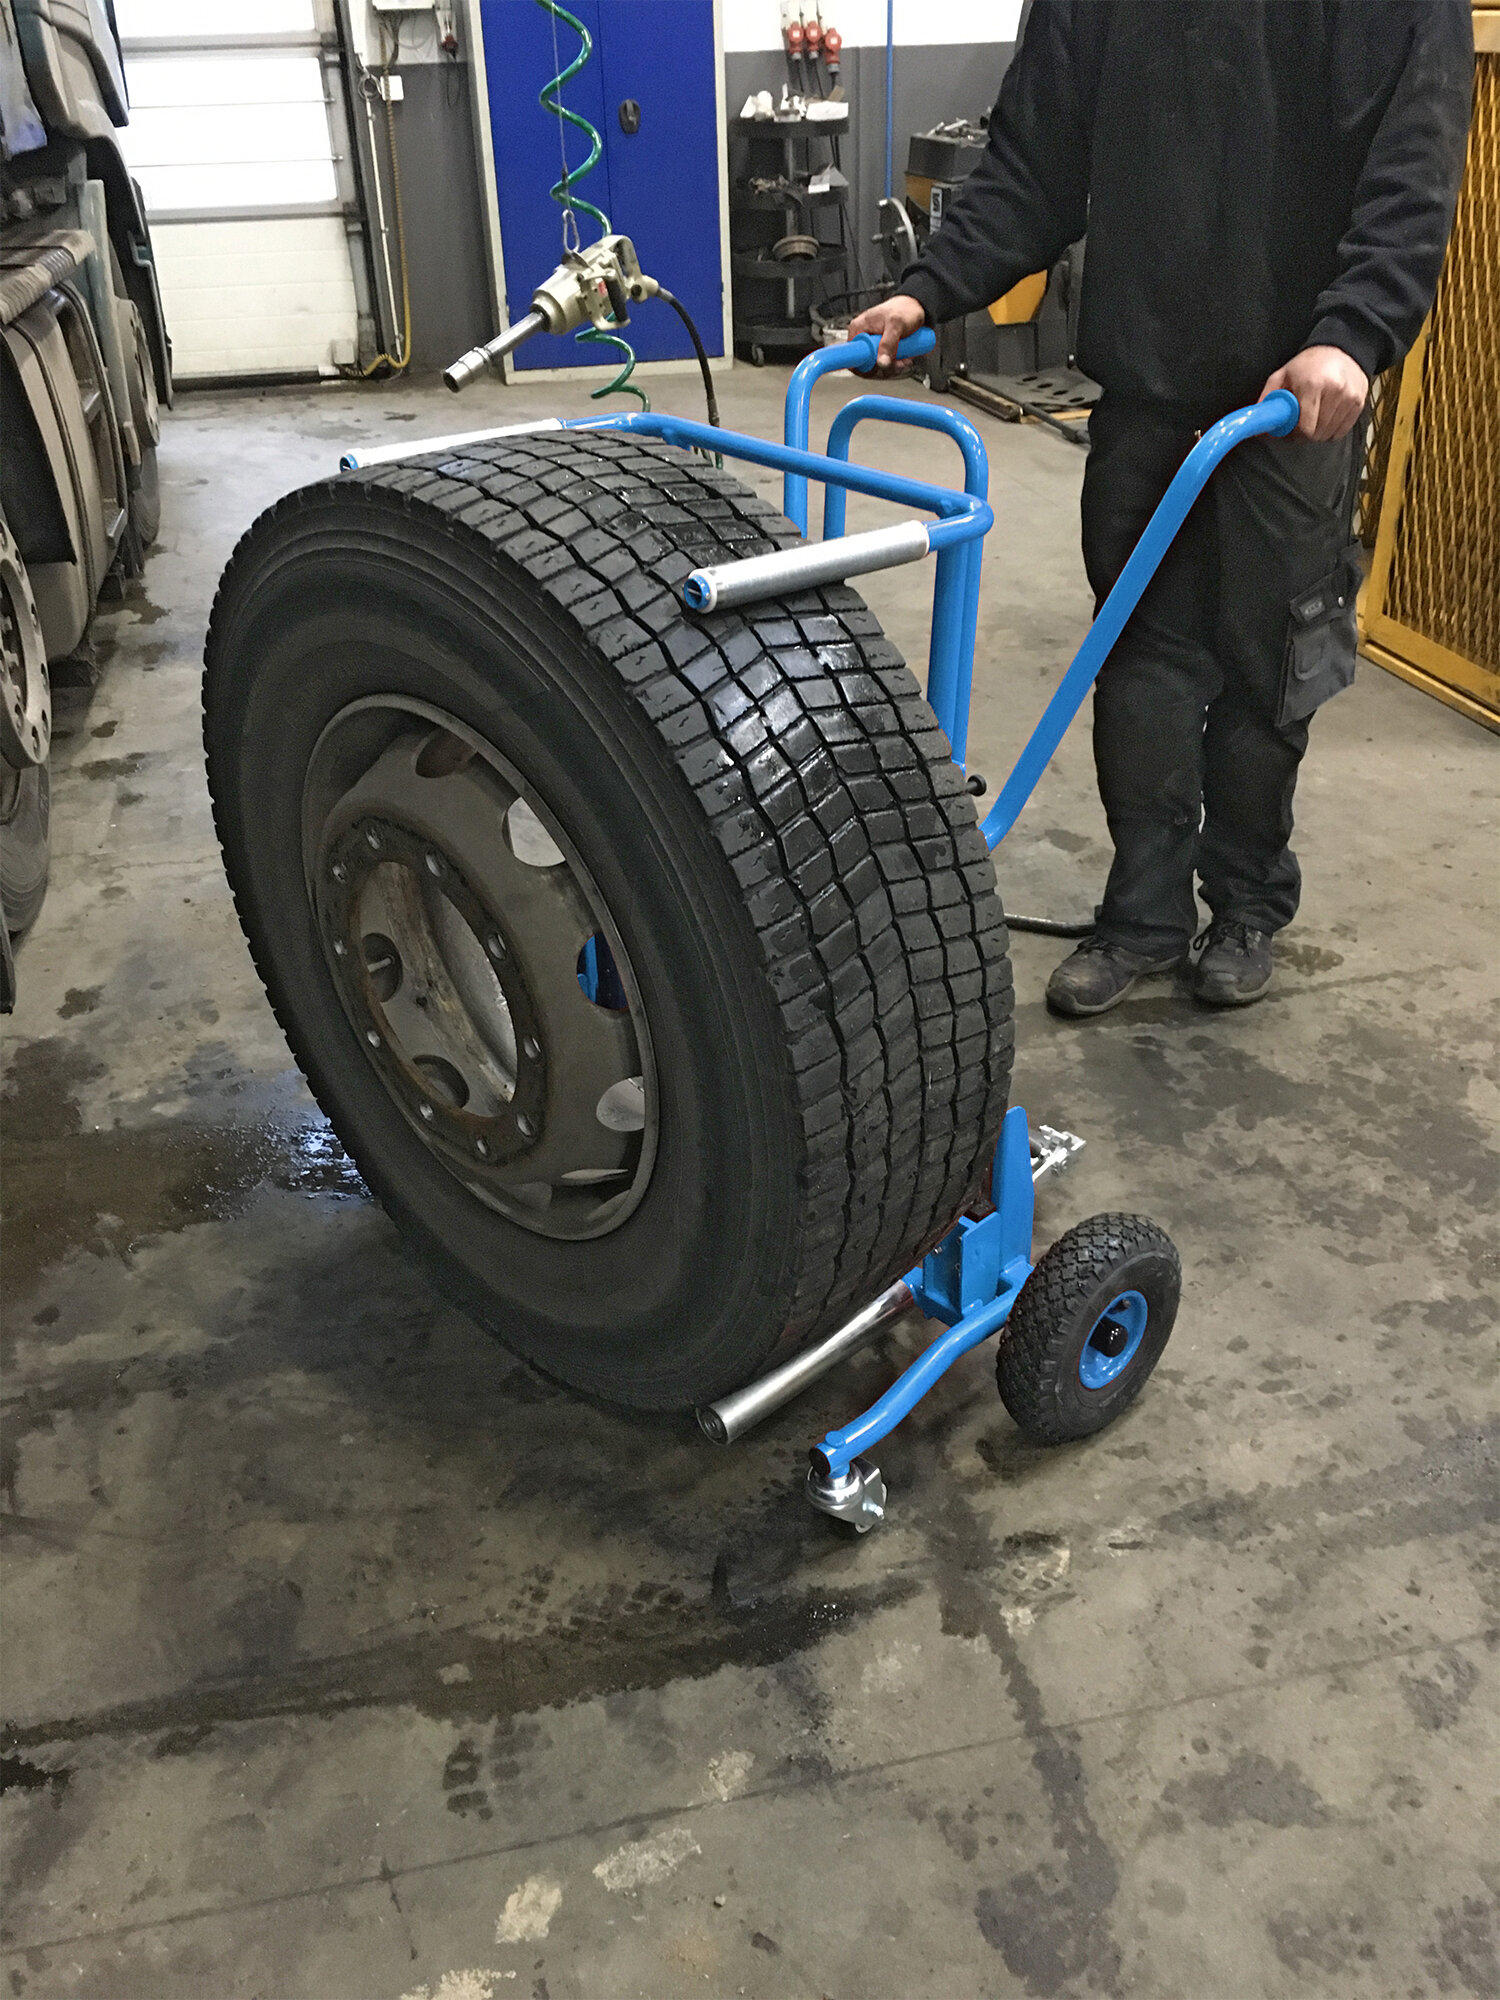 Easy Truck Trolley - manipulación segura de neumáticos de camión en los talleres